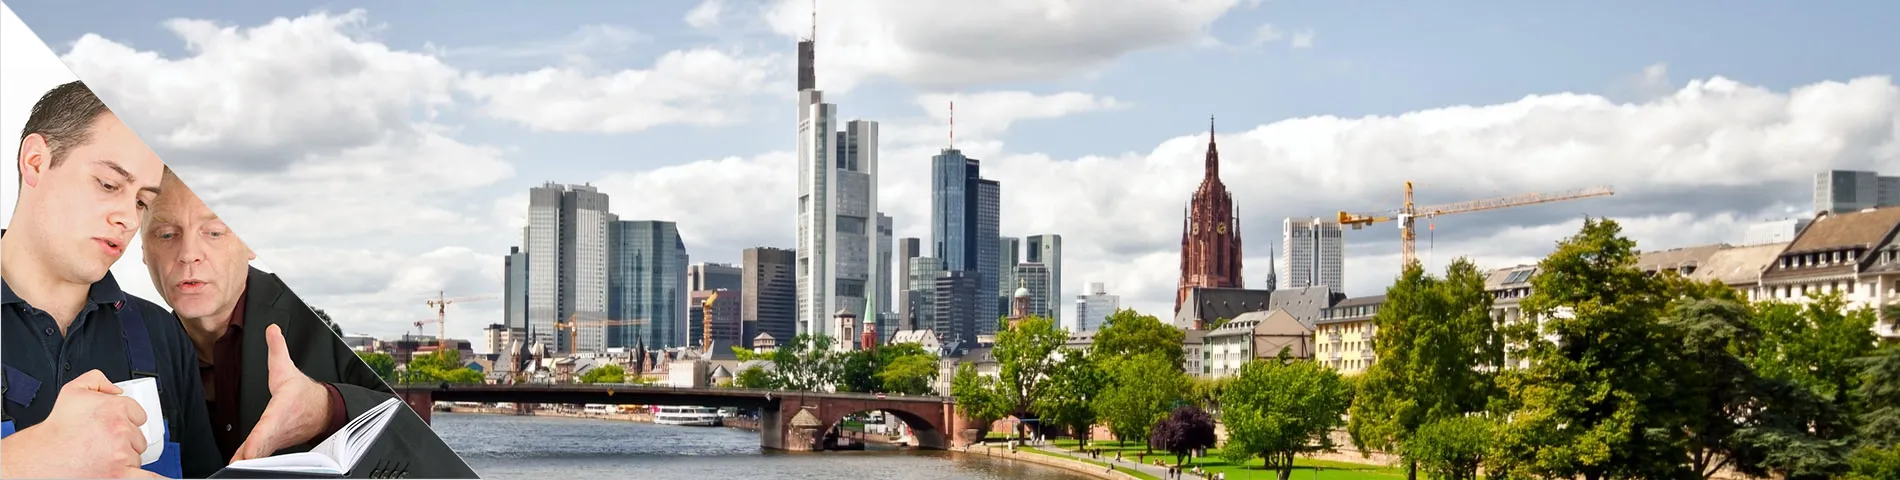 Frankfurt - Einzelunterricht